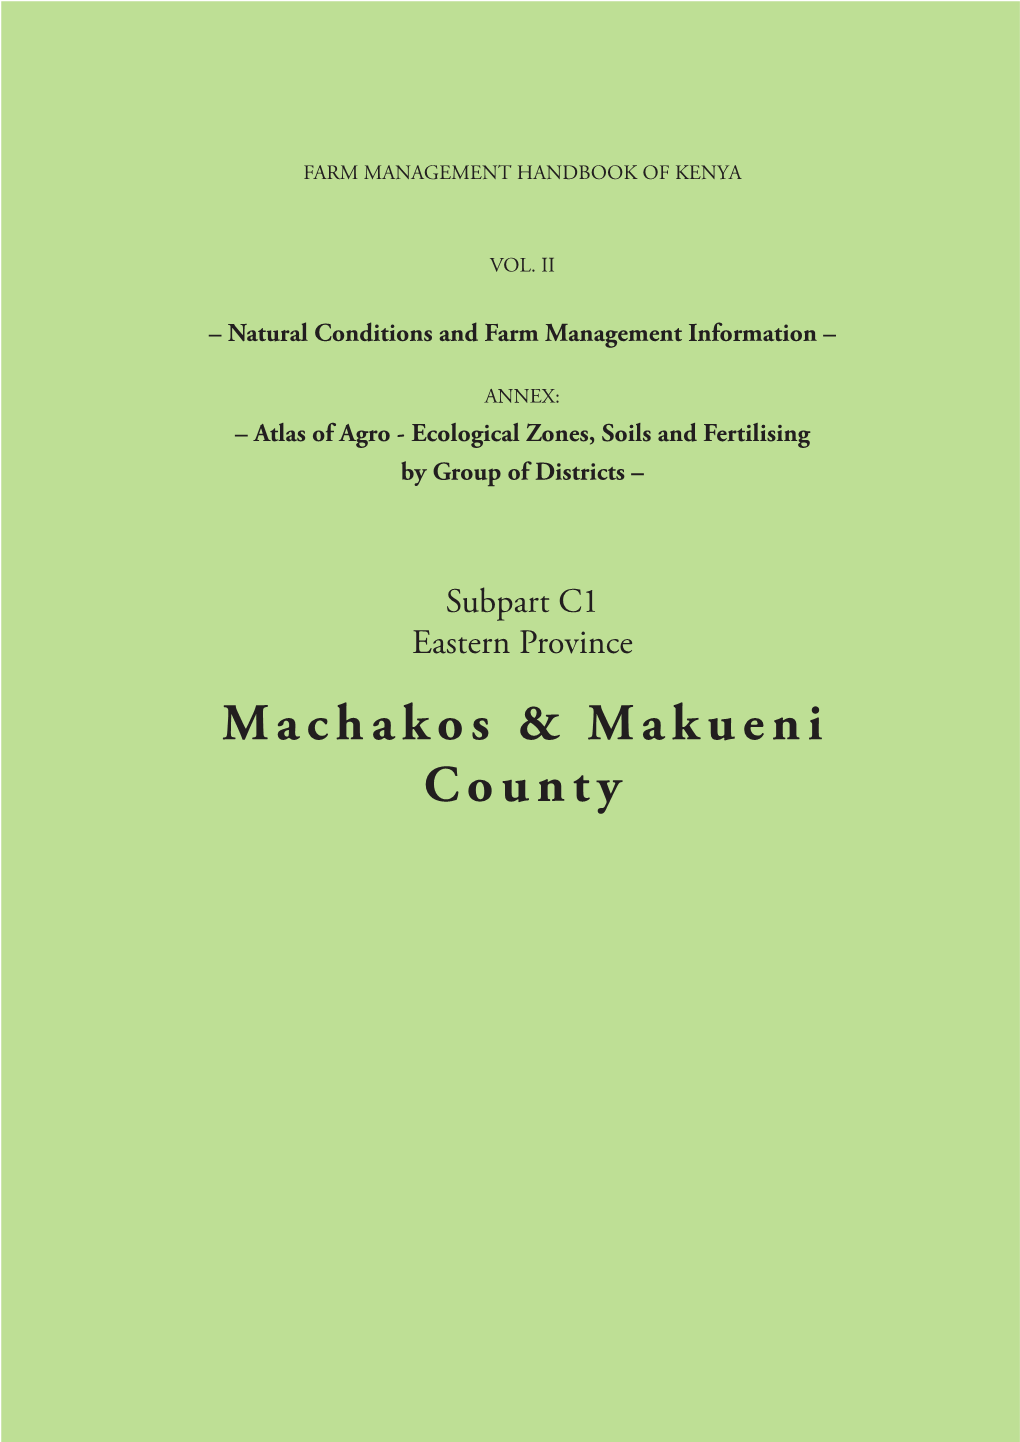 Machakos & Makueni County